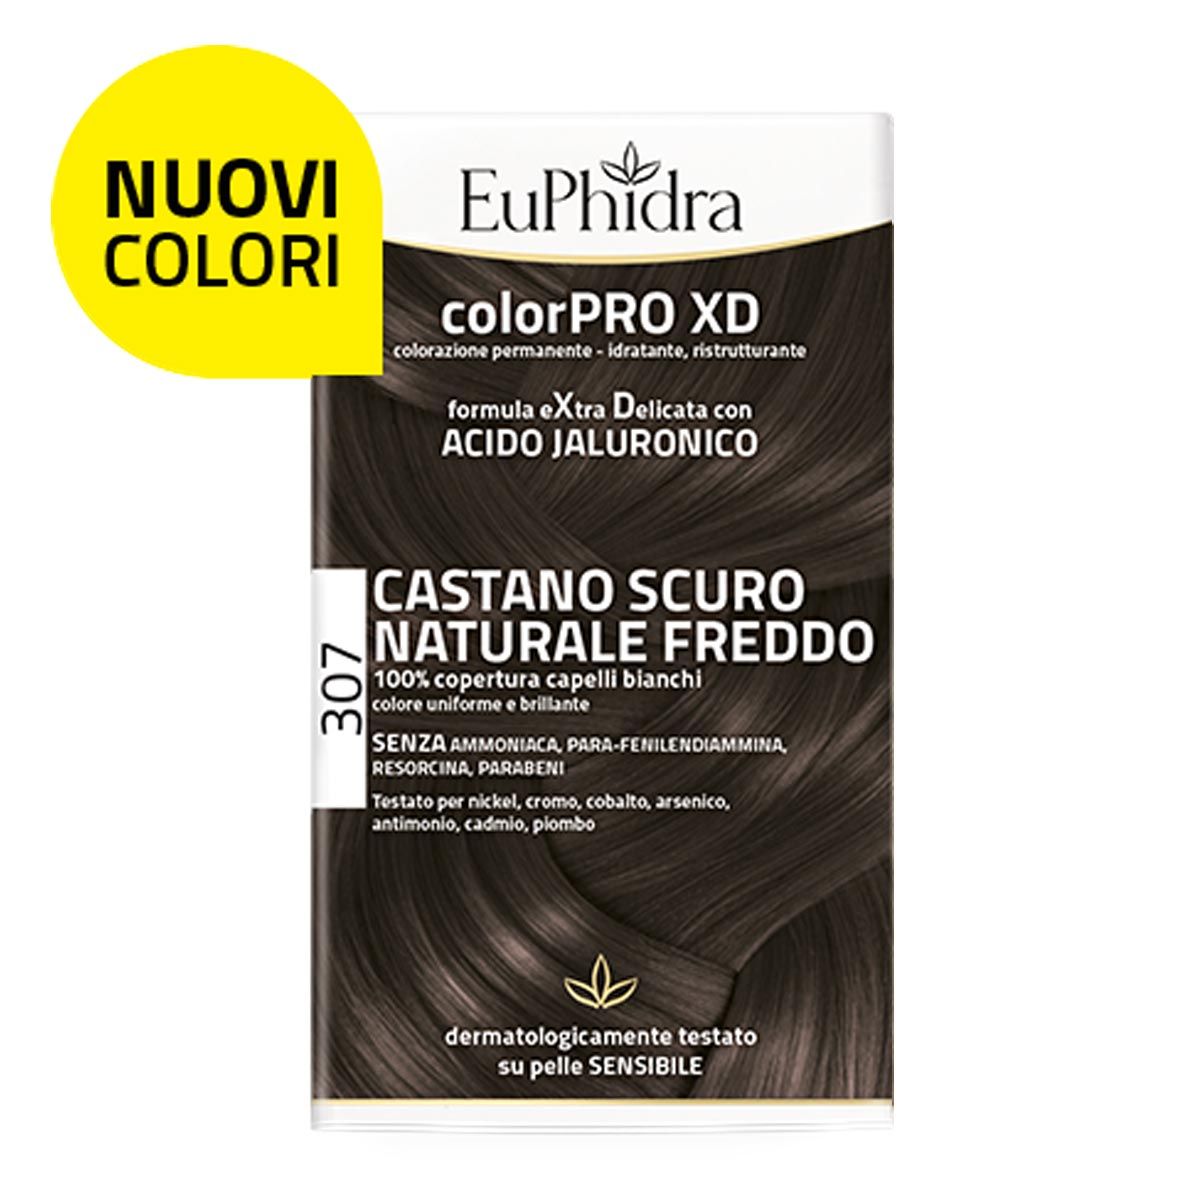 Euphidra Colorpro Xd 307 Tinta Capelli Castano Scuro Naturale Freddo